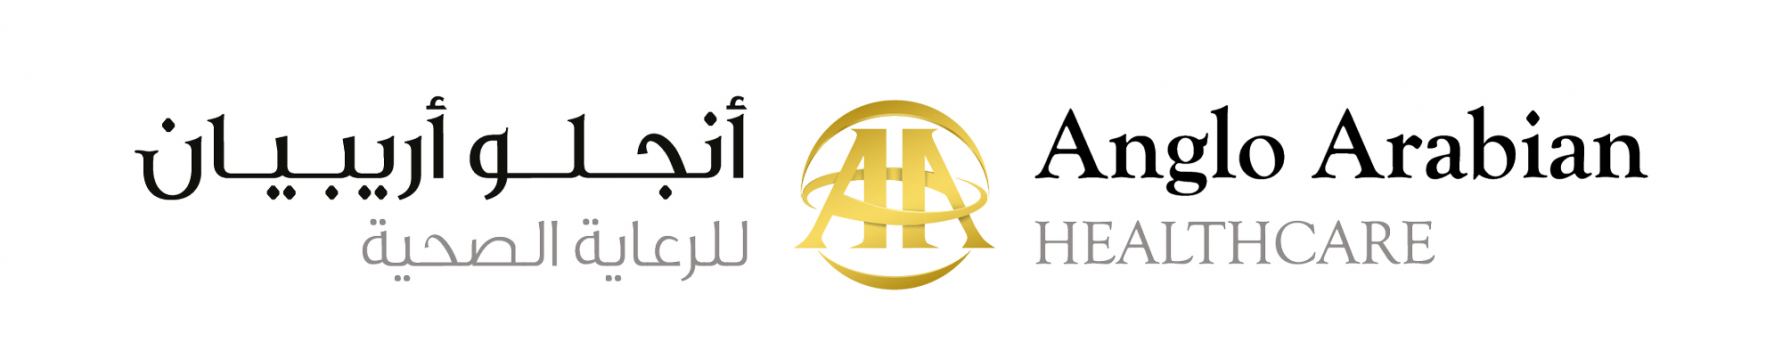 angloarabianhealth Logo